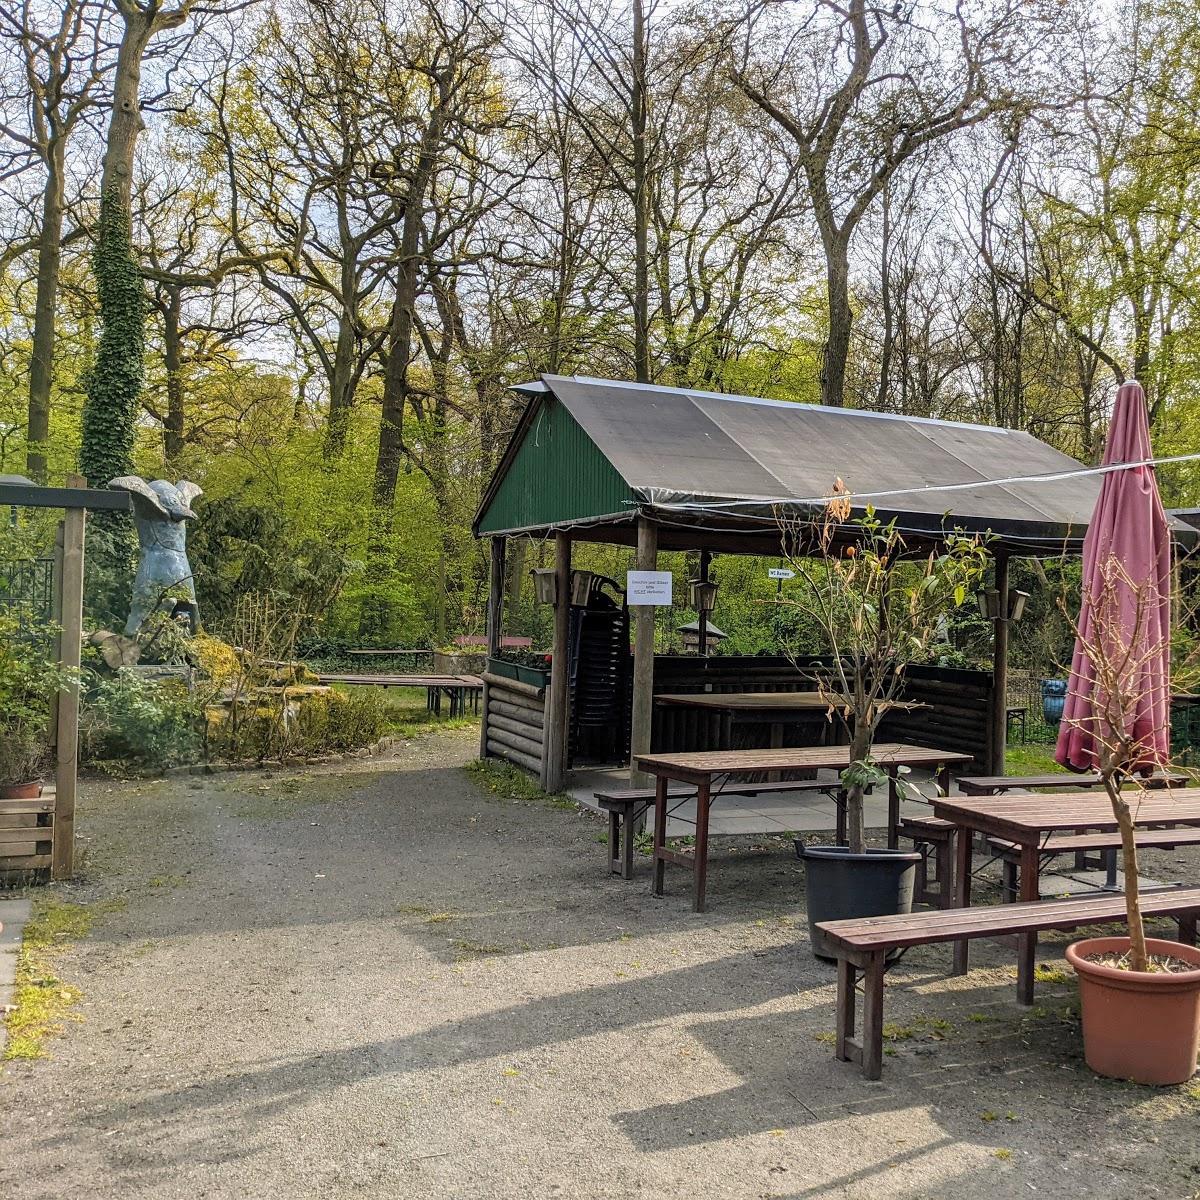 Restaurant "Kulturbiergarten Jungfernheide" in Berlin